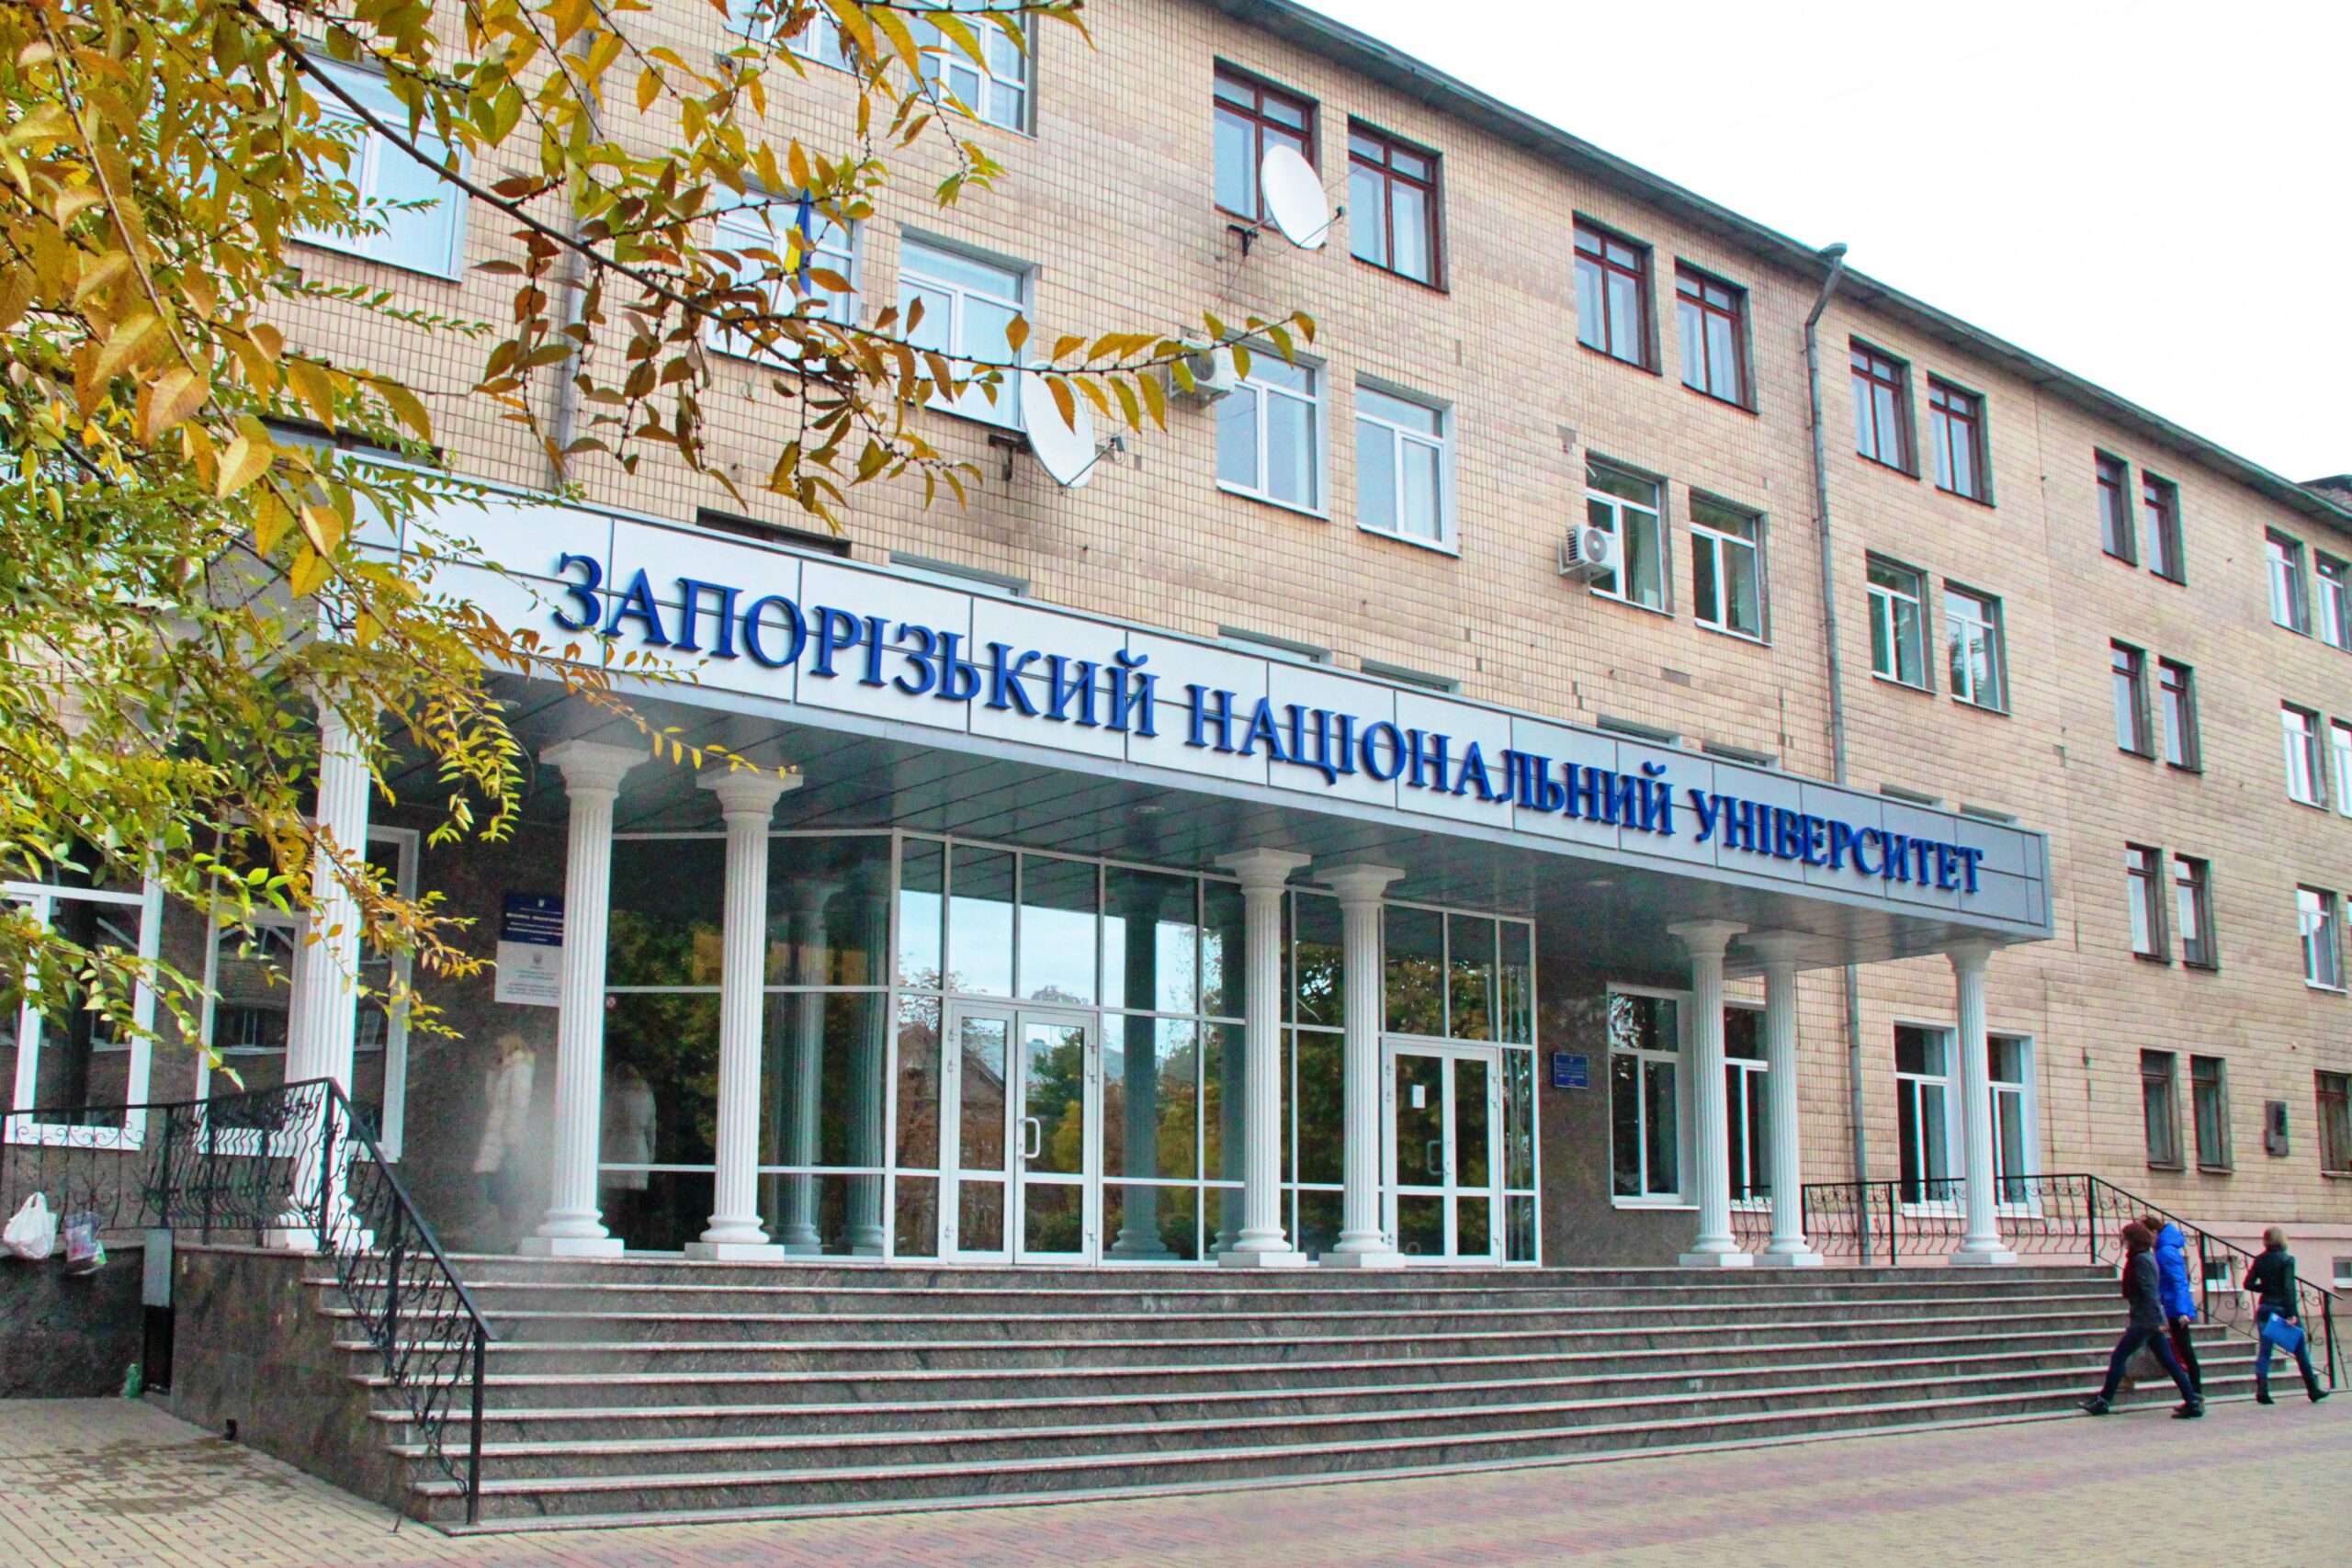 Дистанционное обучение возобновляют в Запорожском национальном университете